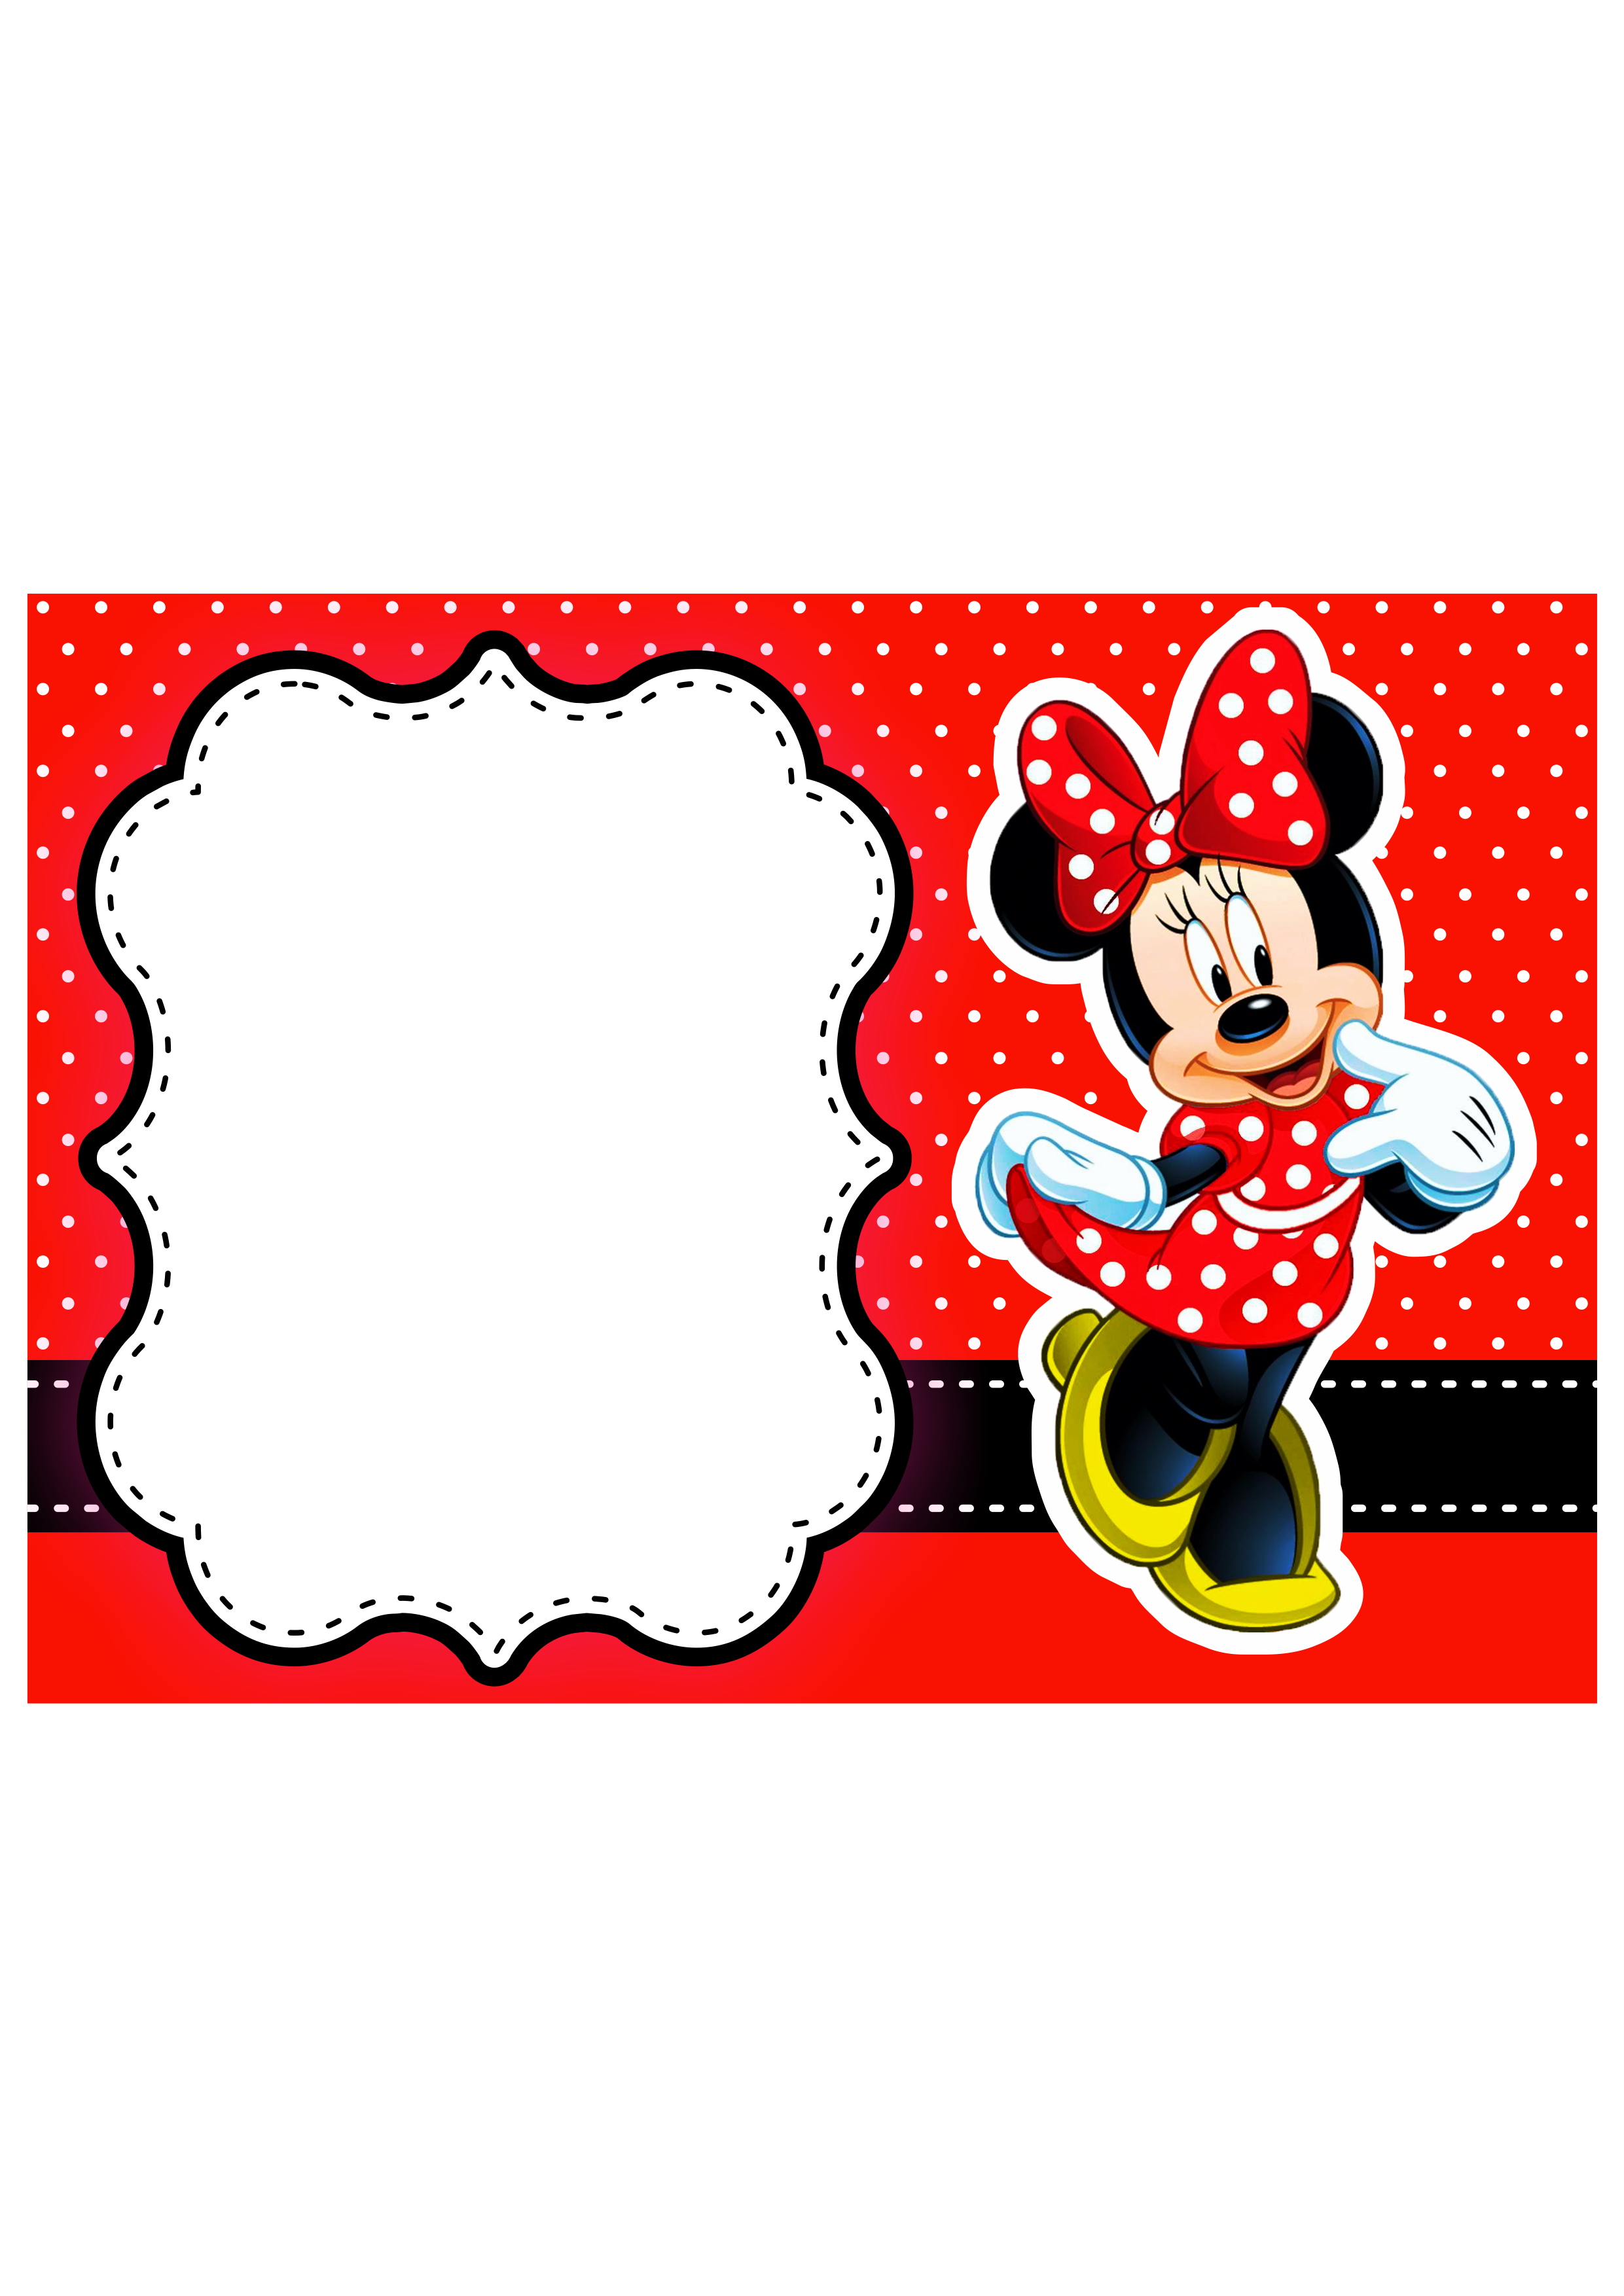 Convite digital Minnie vermelha grátis pronto para editar e imprimir aniversário infantil menina artigos de papelaria renda extra png